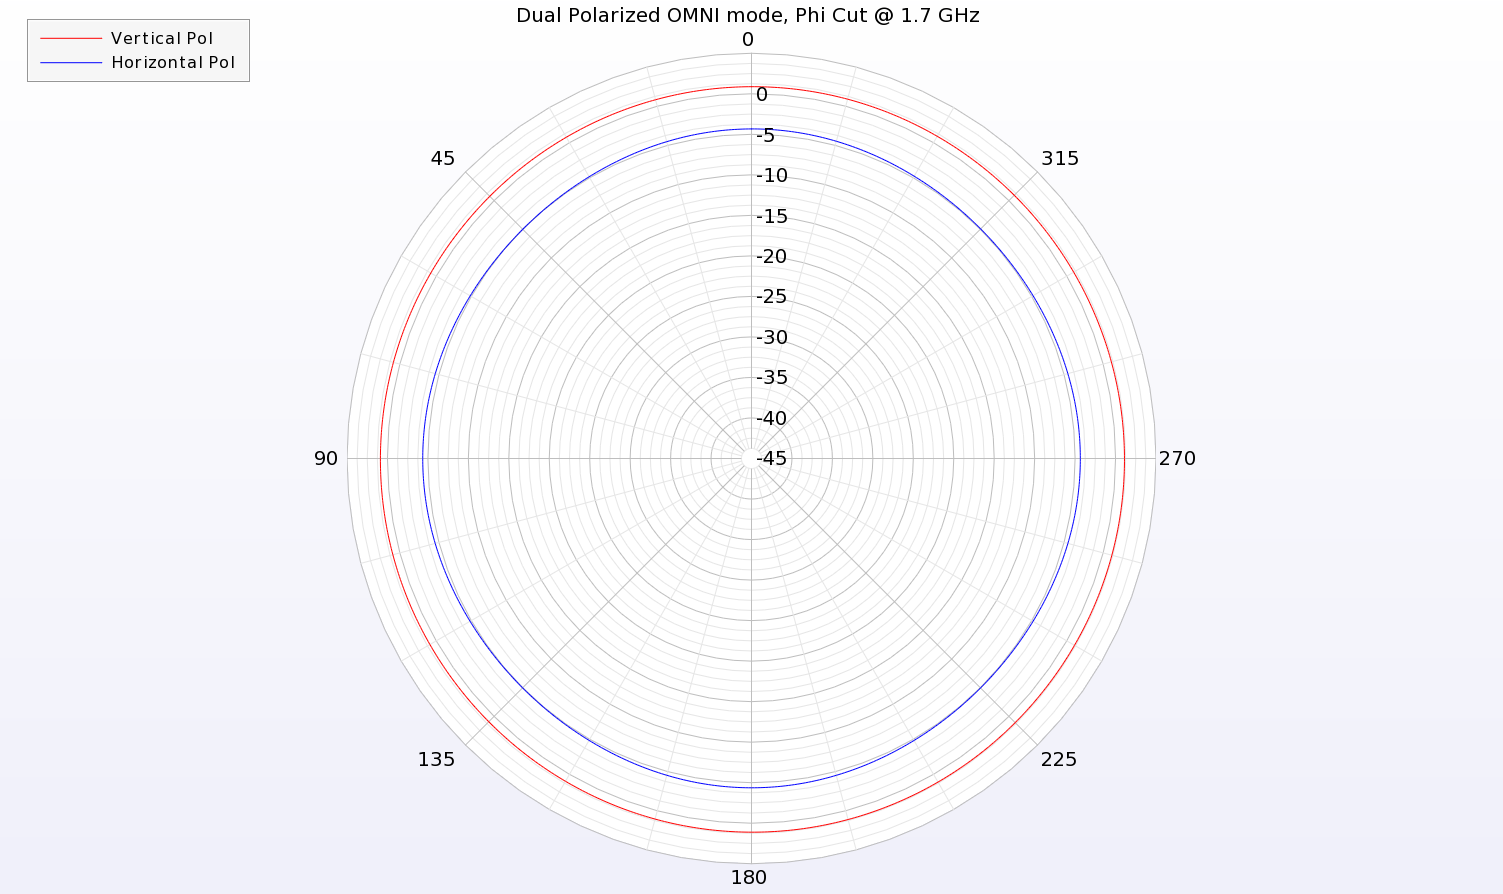 Figura 12: En el modo OMNI de polarización dual, se alimentan ambos conjuntos de antenas y se producen polarizaciones horizontales y verticales. La imagen muestra un corte azimutal a través del patrón a 1,7 GHz y se ven tanto los patrones verticales como horizontales....